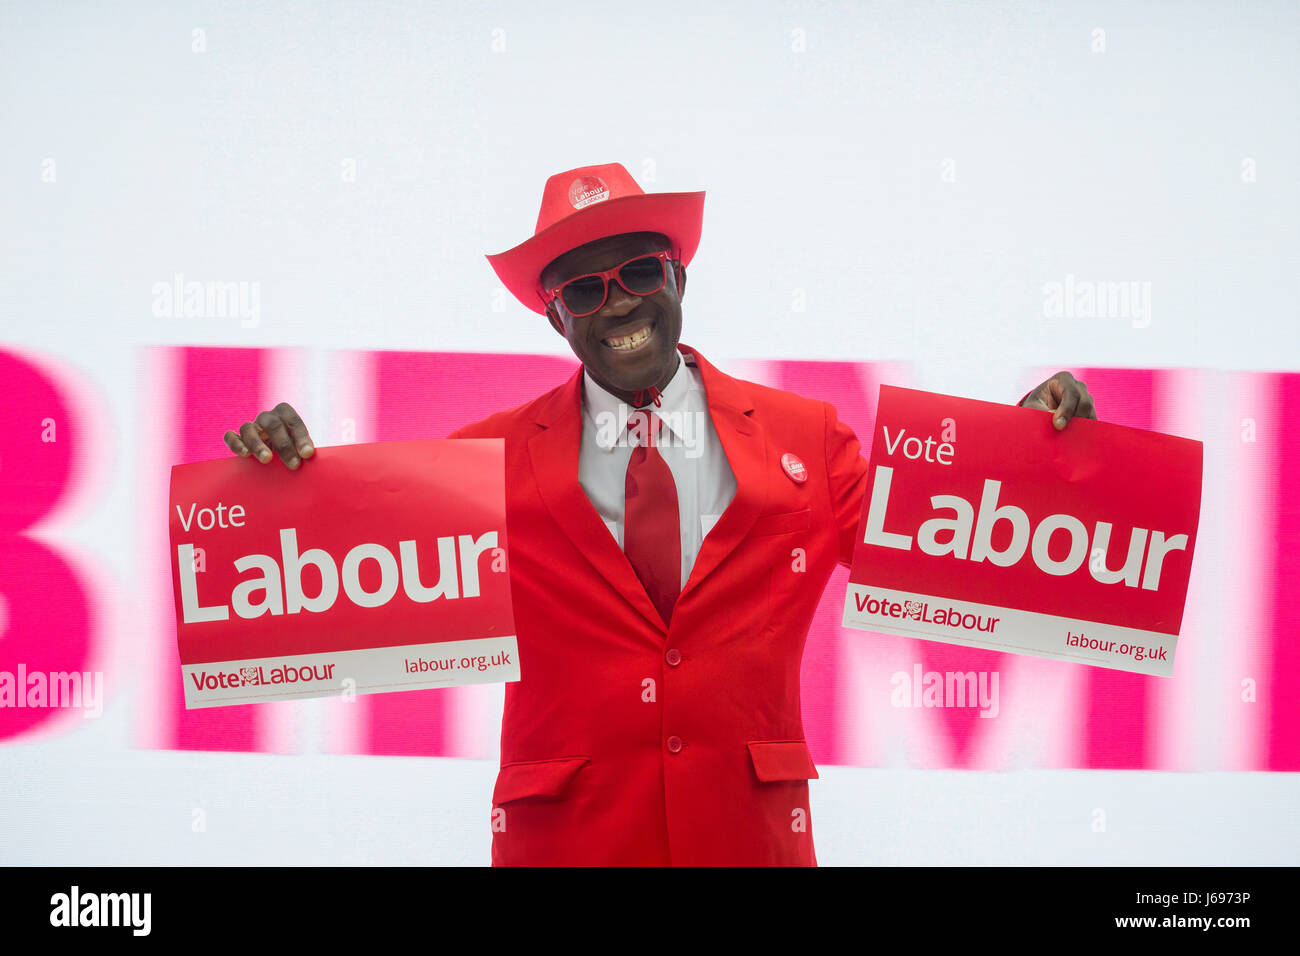 Parti travailliste britannique flamboyant partisan vêtu de rouge lors d'un rassemblement politique au cours de la campagne électorale 2017 Banque D'Images